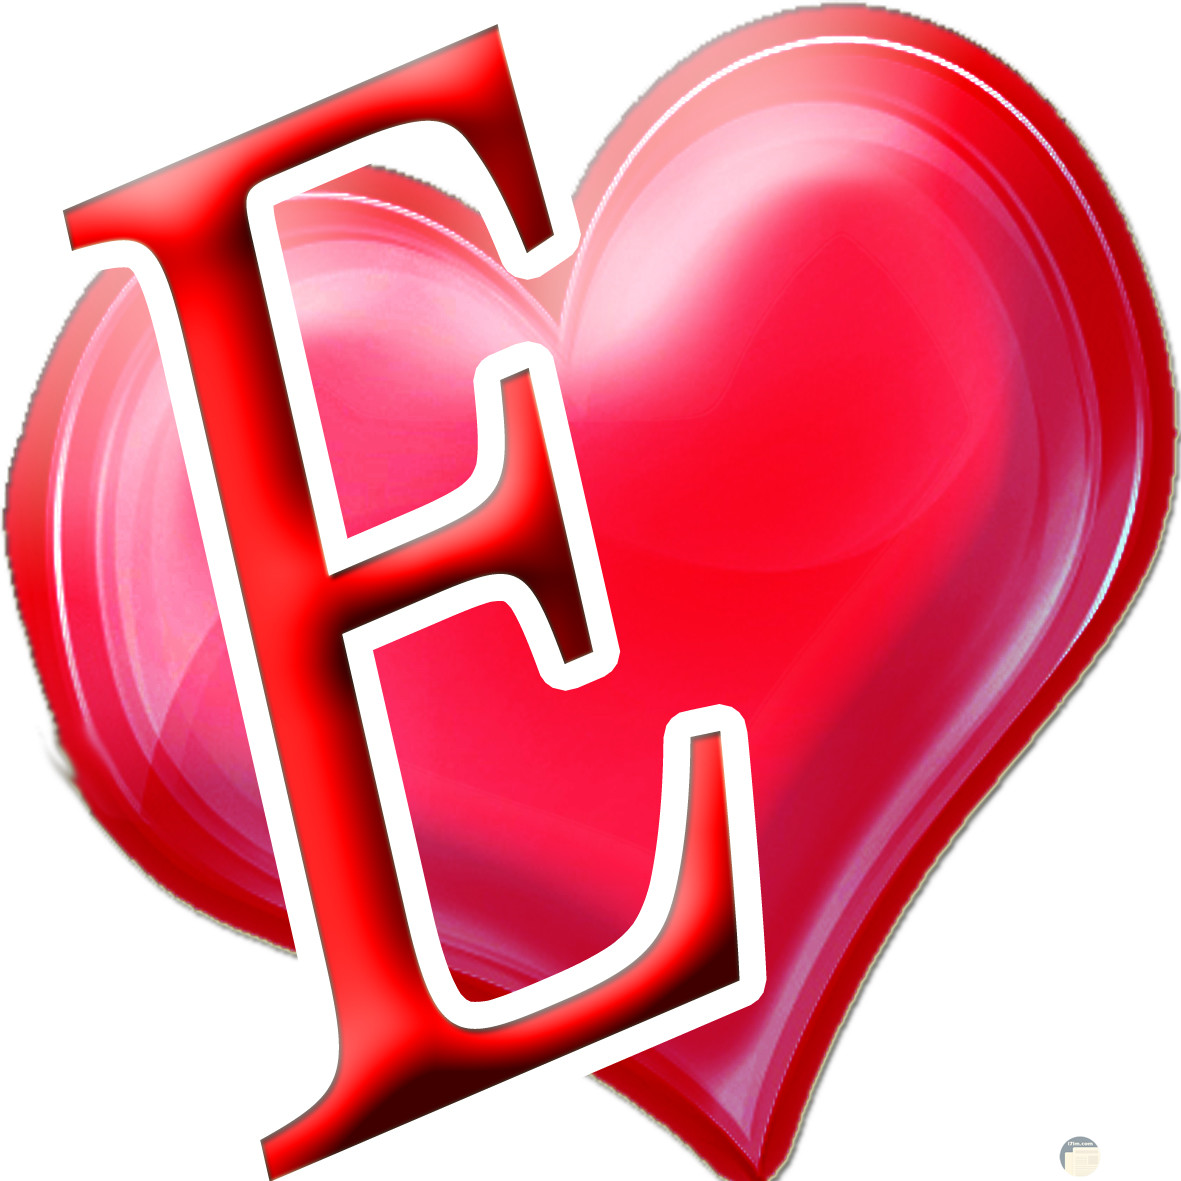 حرف E داخل قلب احمر جميل